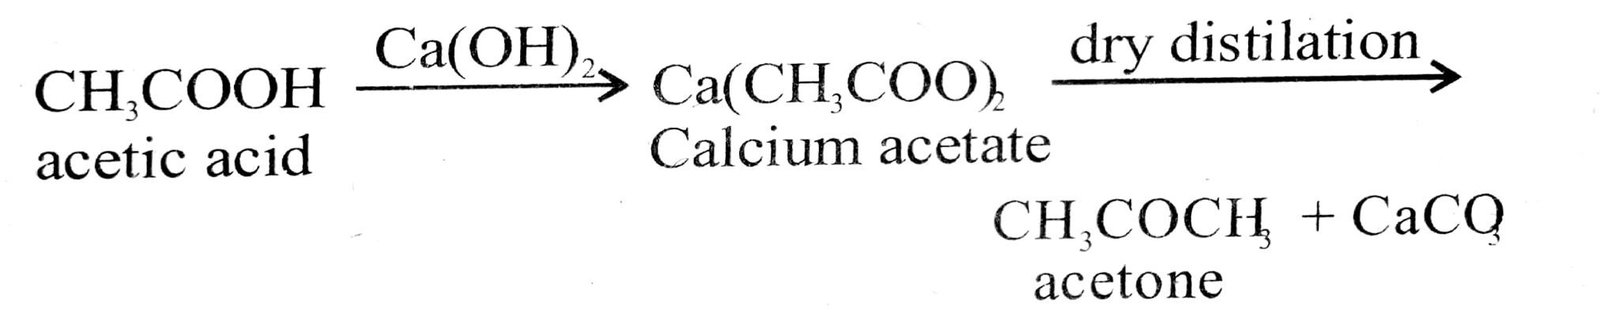 Acetic acid into Acetone